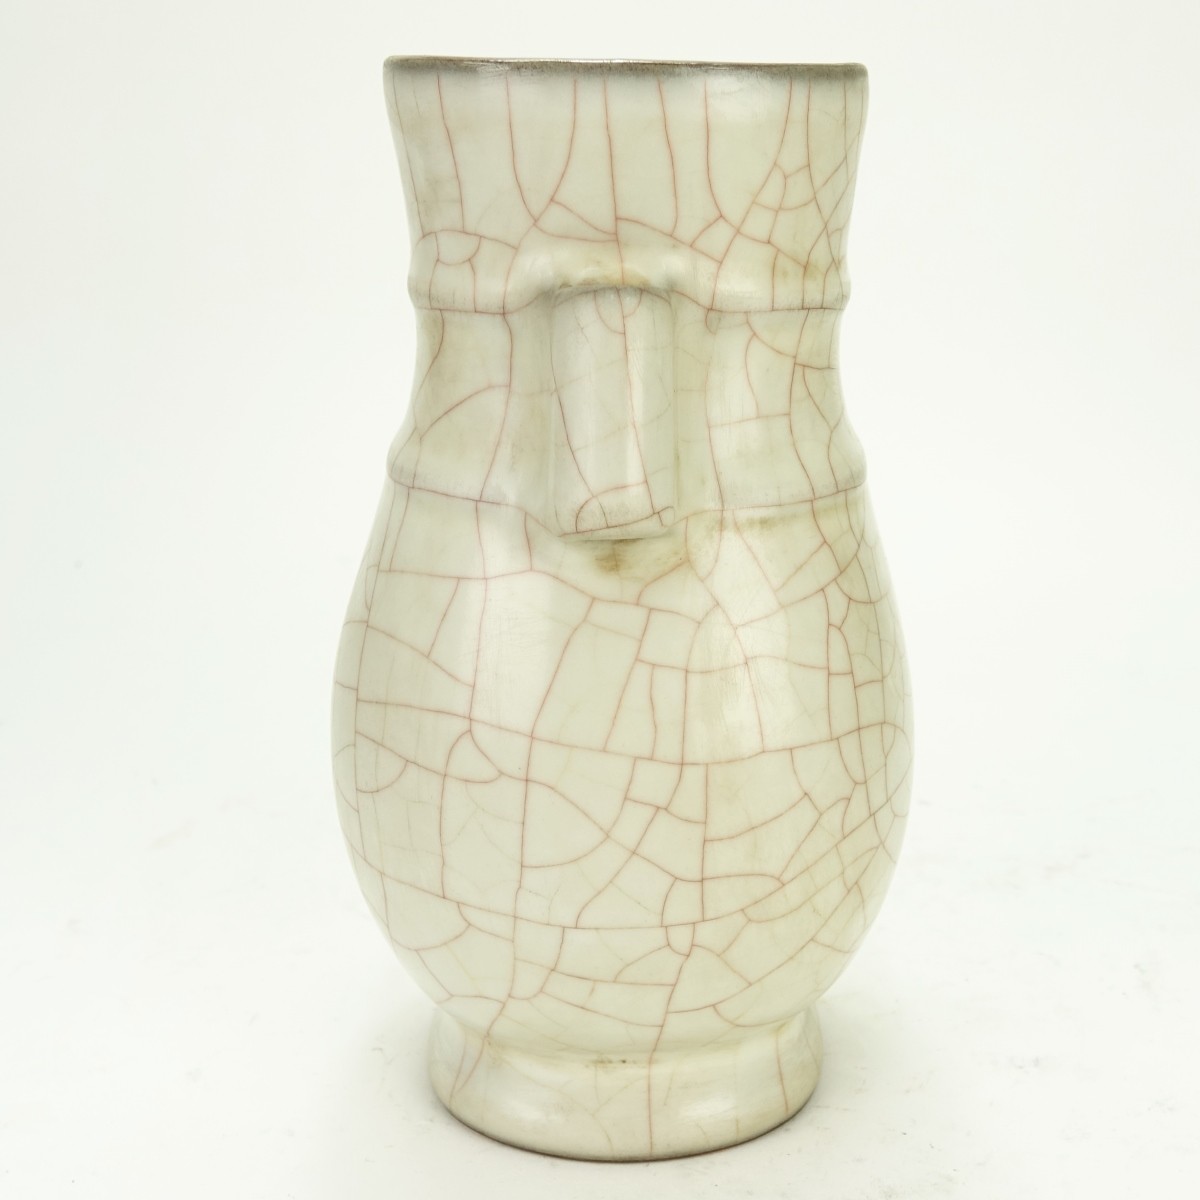 Chinese Vase